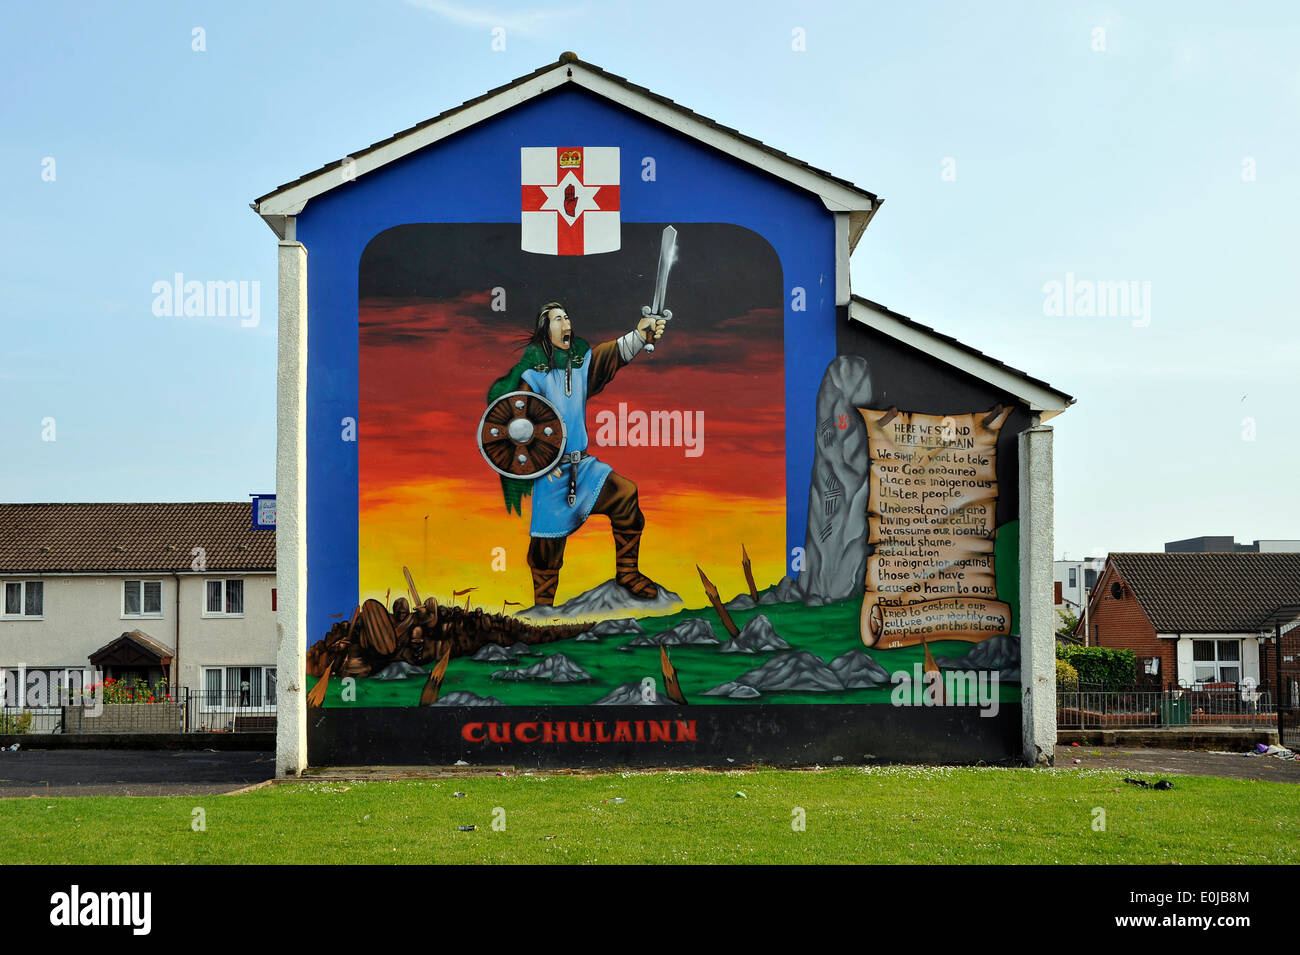 Queste immagini di pitture murali sono spesso placcato in tutto il mondo su news bulletin su Belfast e i problemi,sommosse Foto Stock